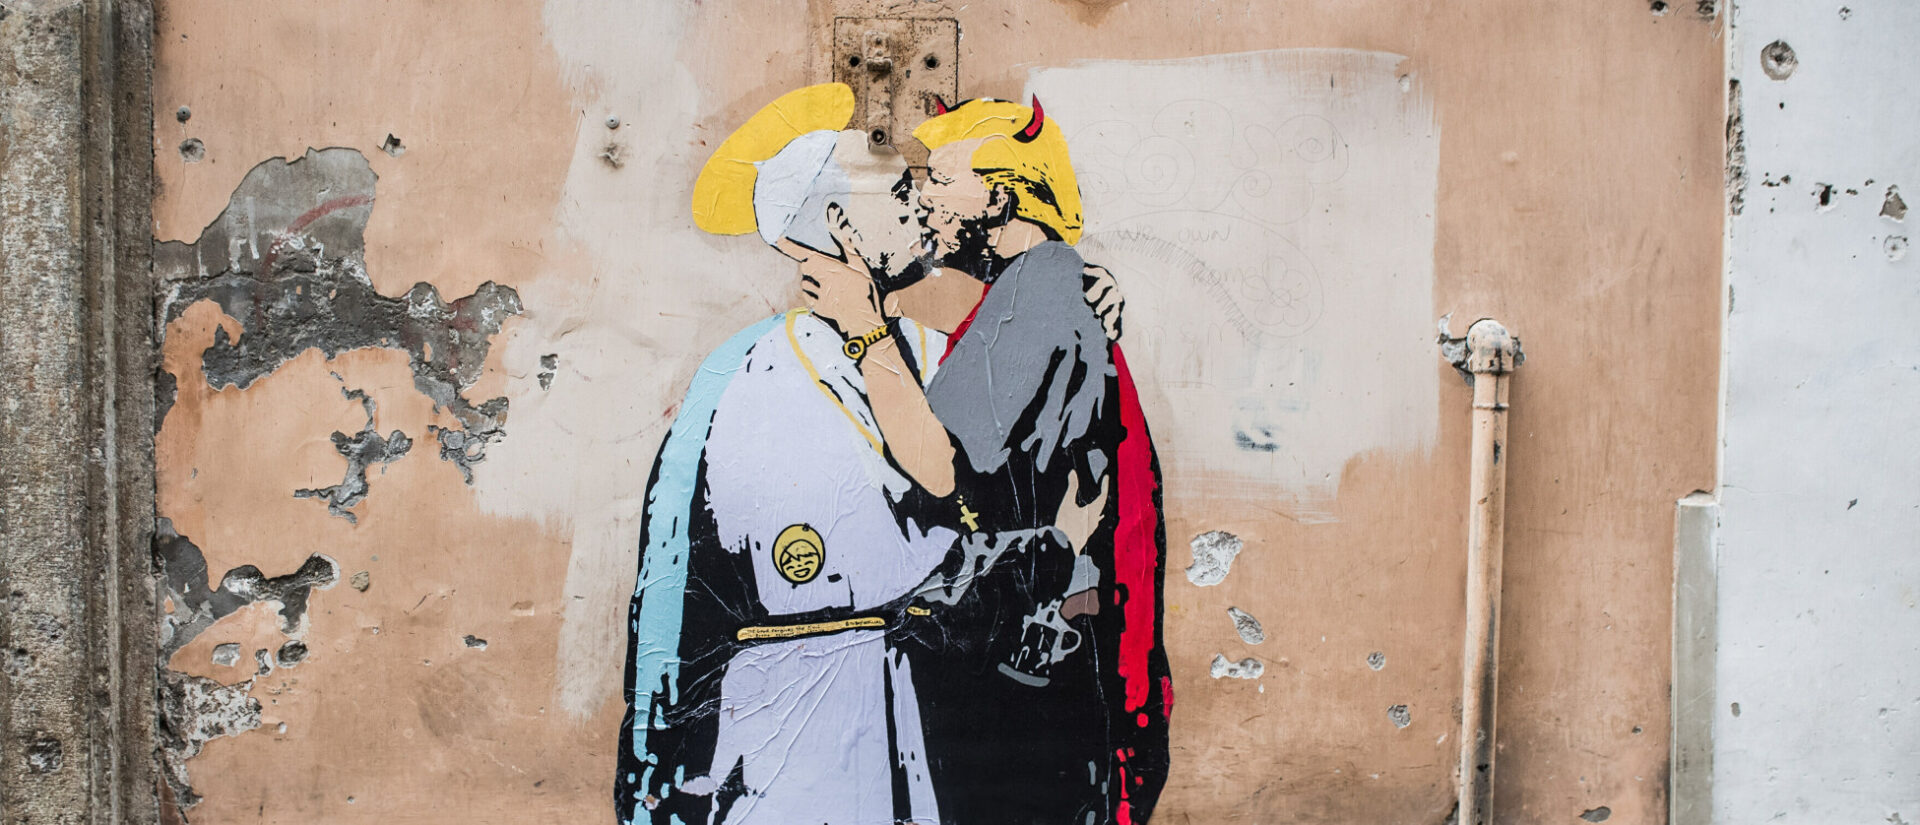 Papst Franziskus als Heiliger und den Ex-US-Präsident Donald Trump als Teufel – Graffito von 2017 in Rom